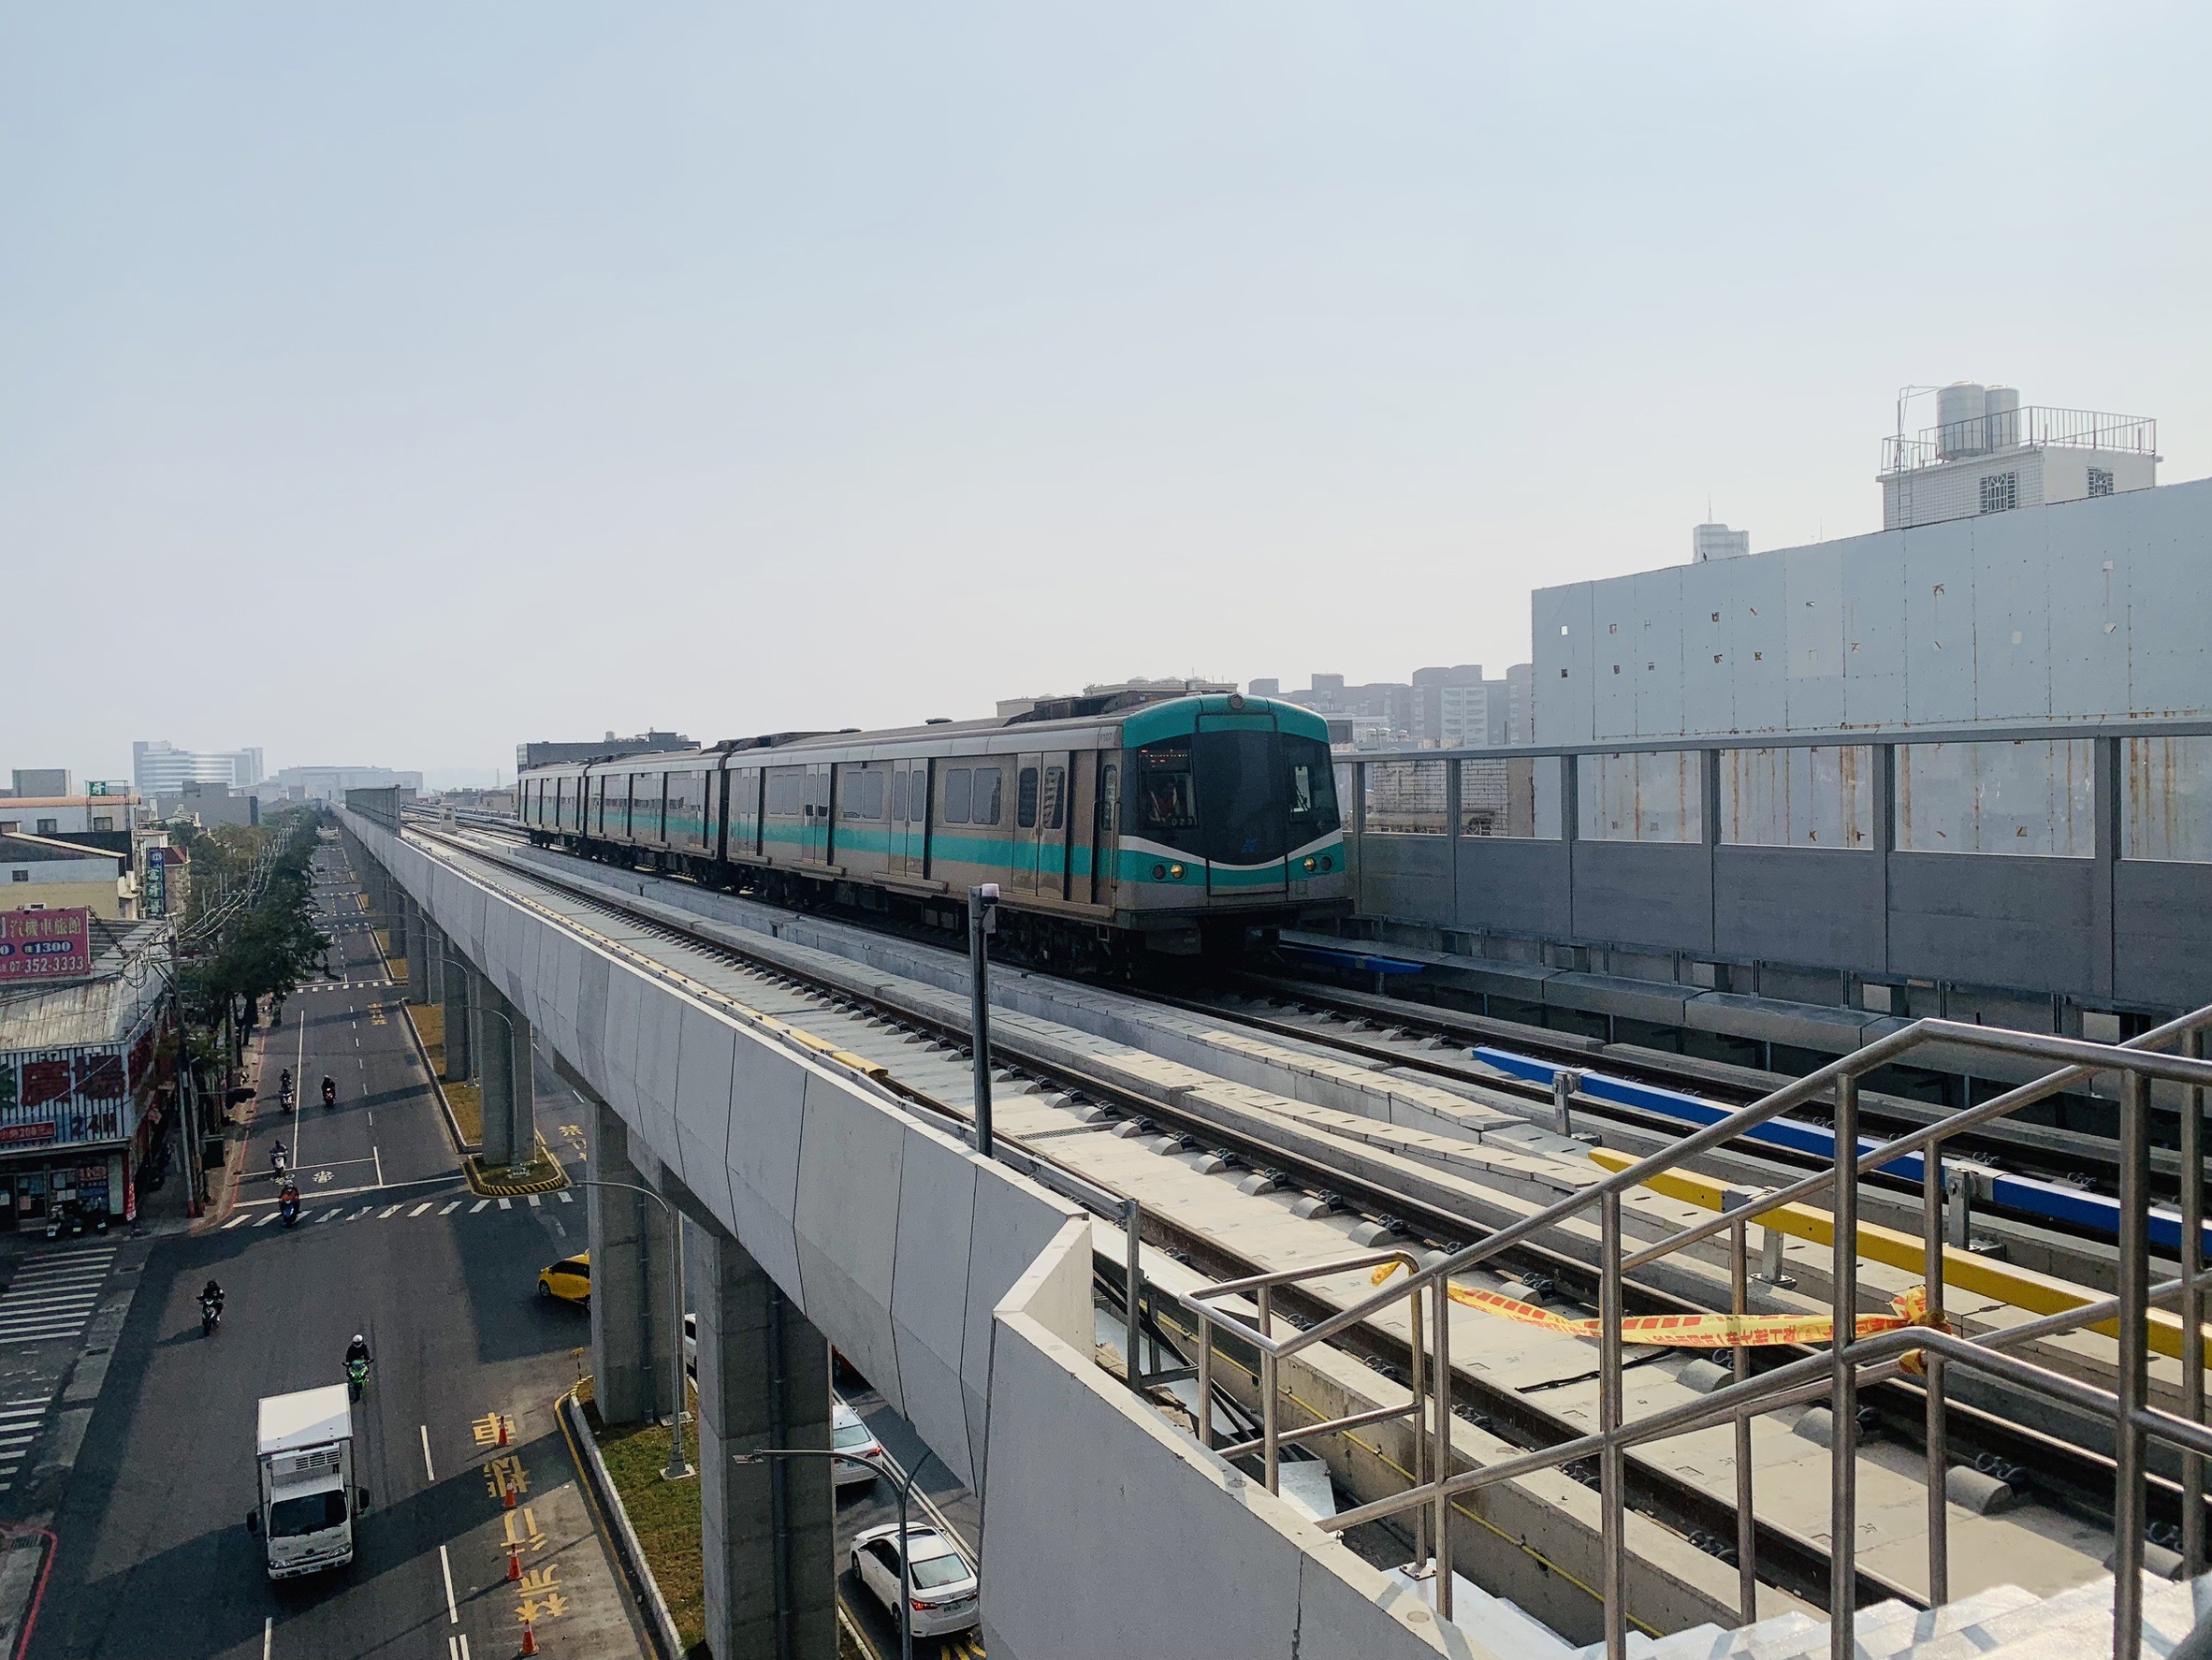 高雄捷运红线预计6月延伸通车至冈山车站　RK1联开招商同步启动　带动北高雄发展